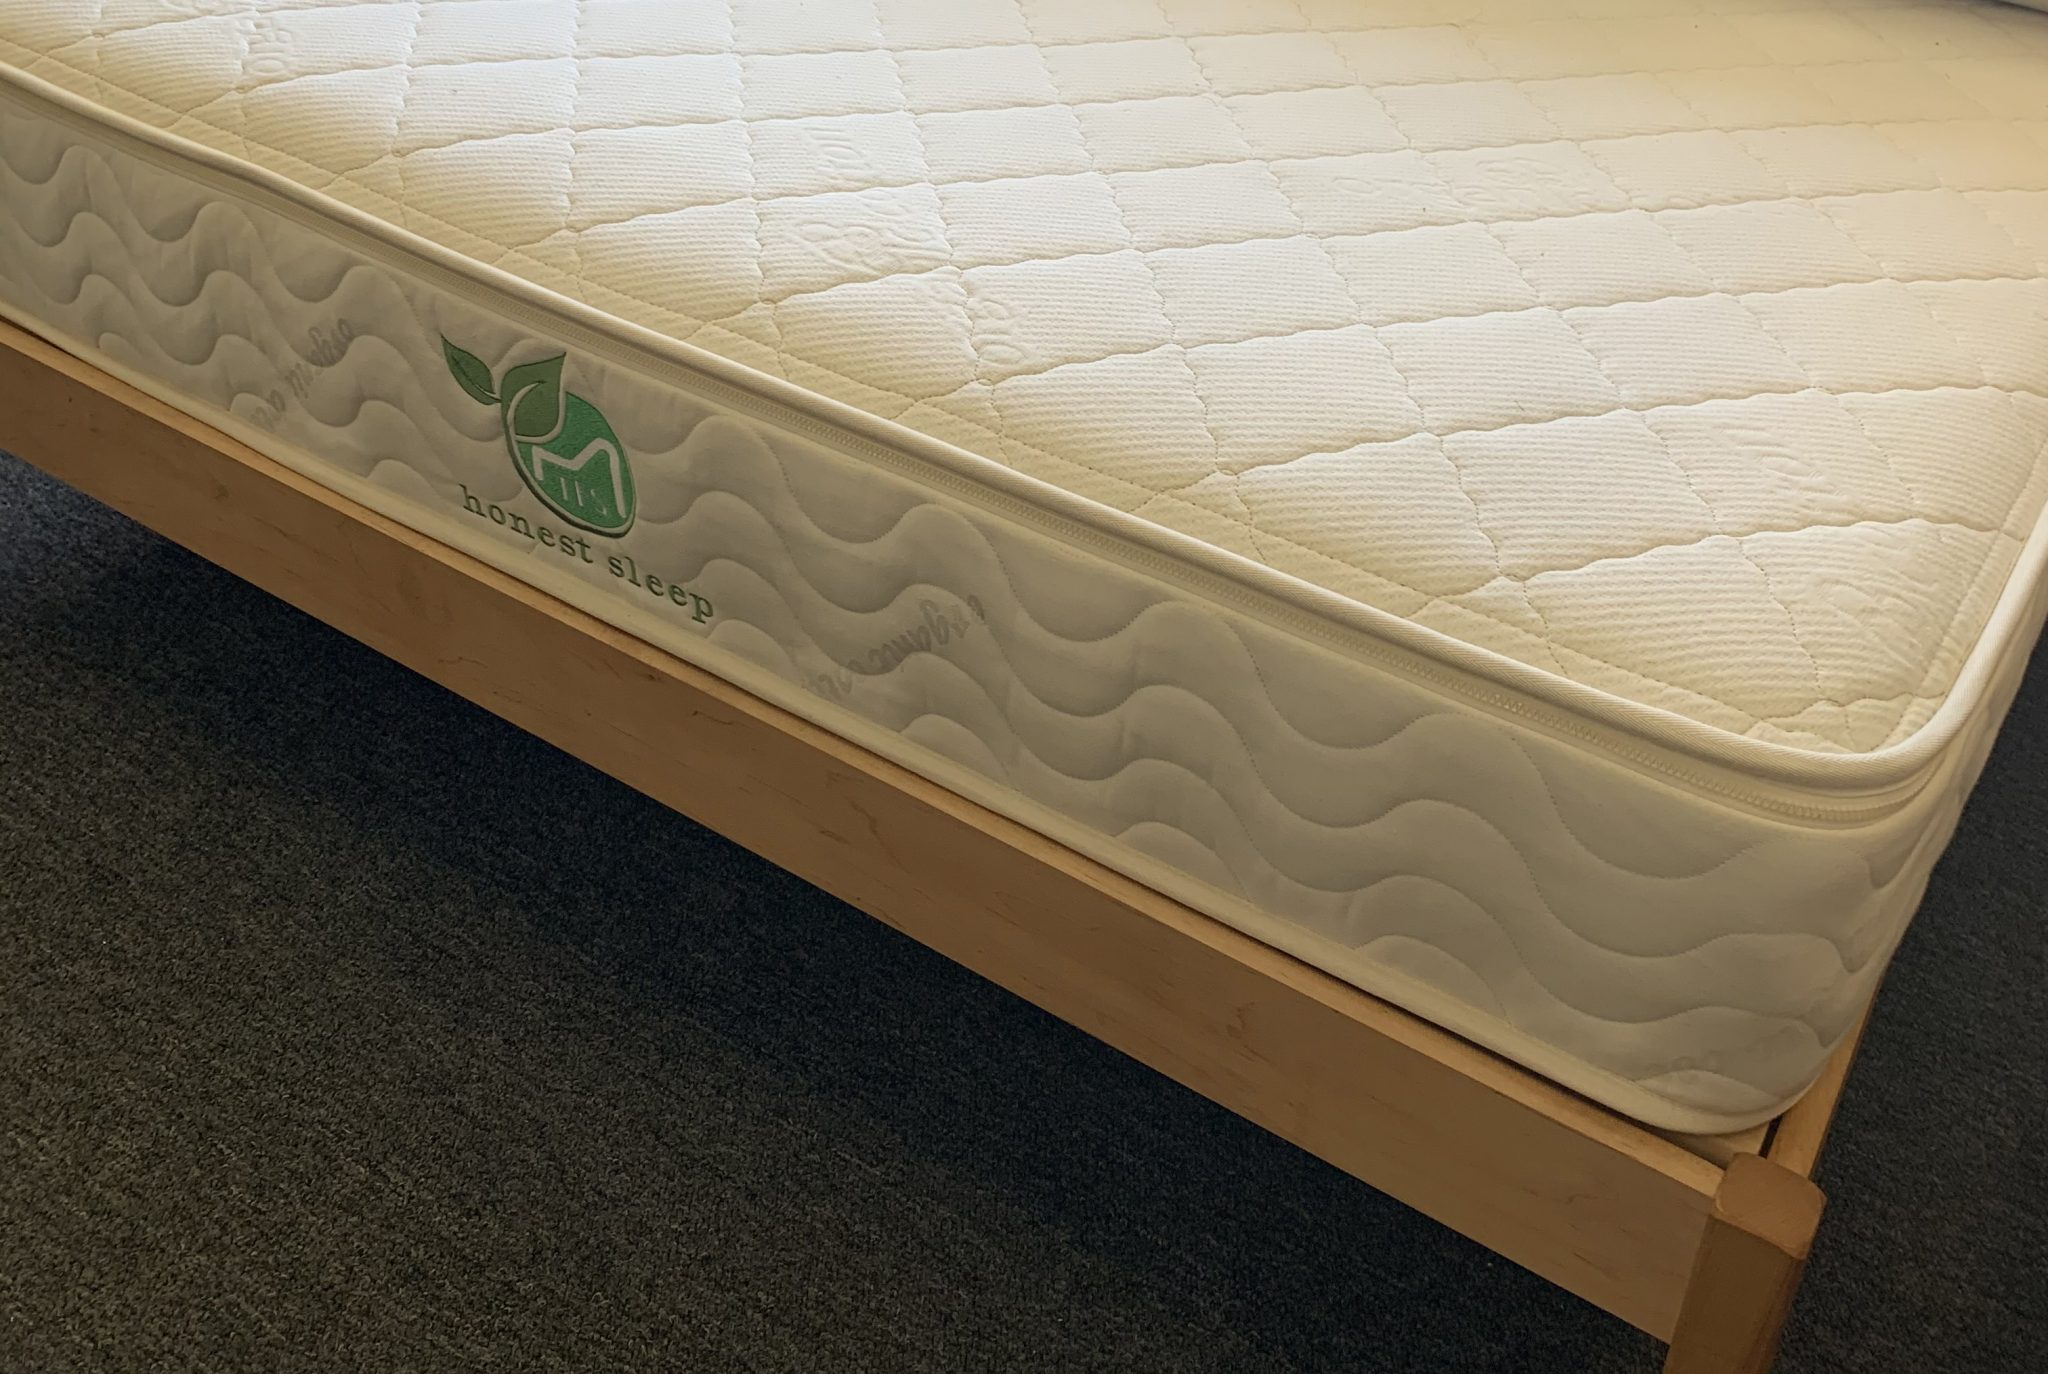 honest sleep mattress collection